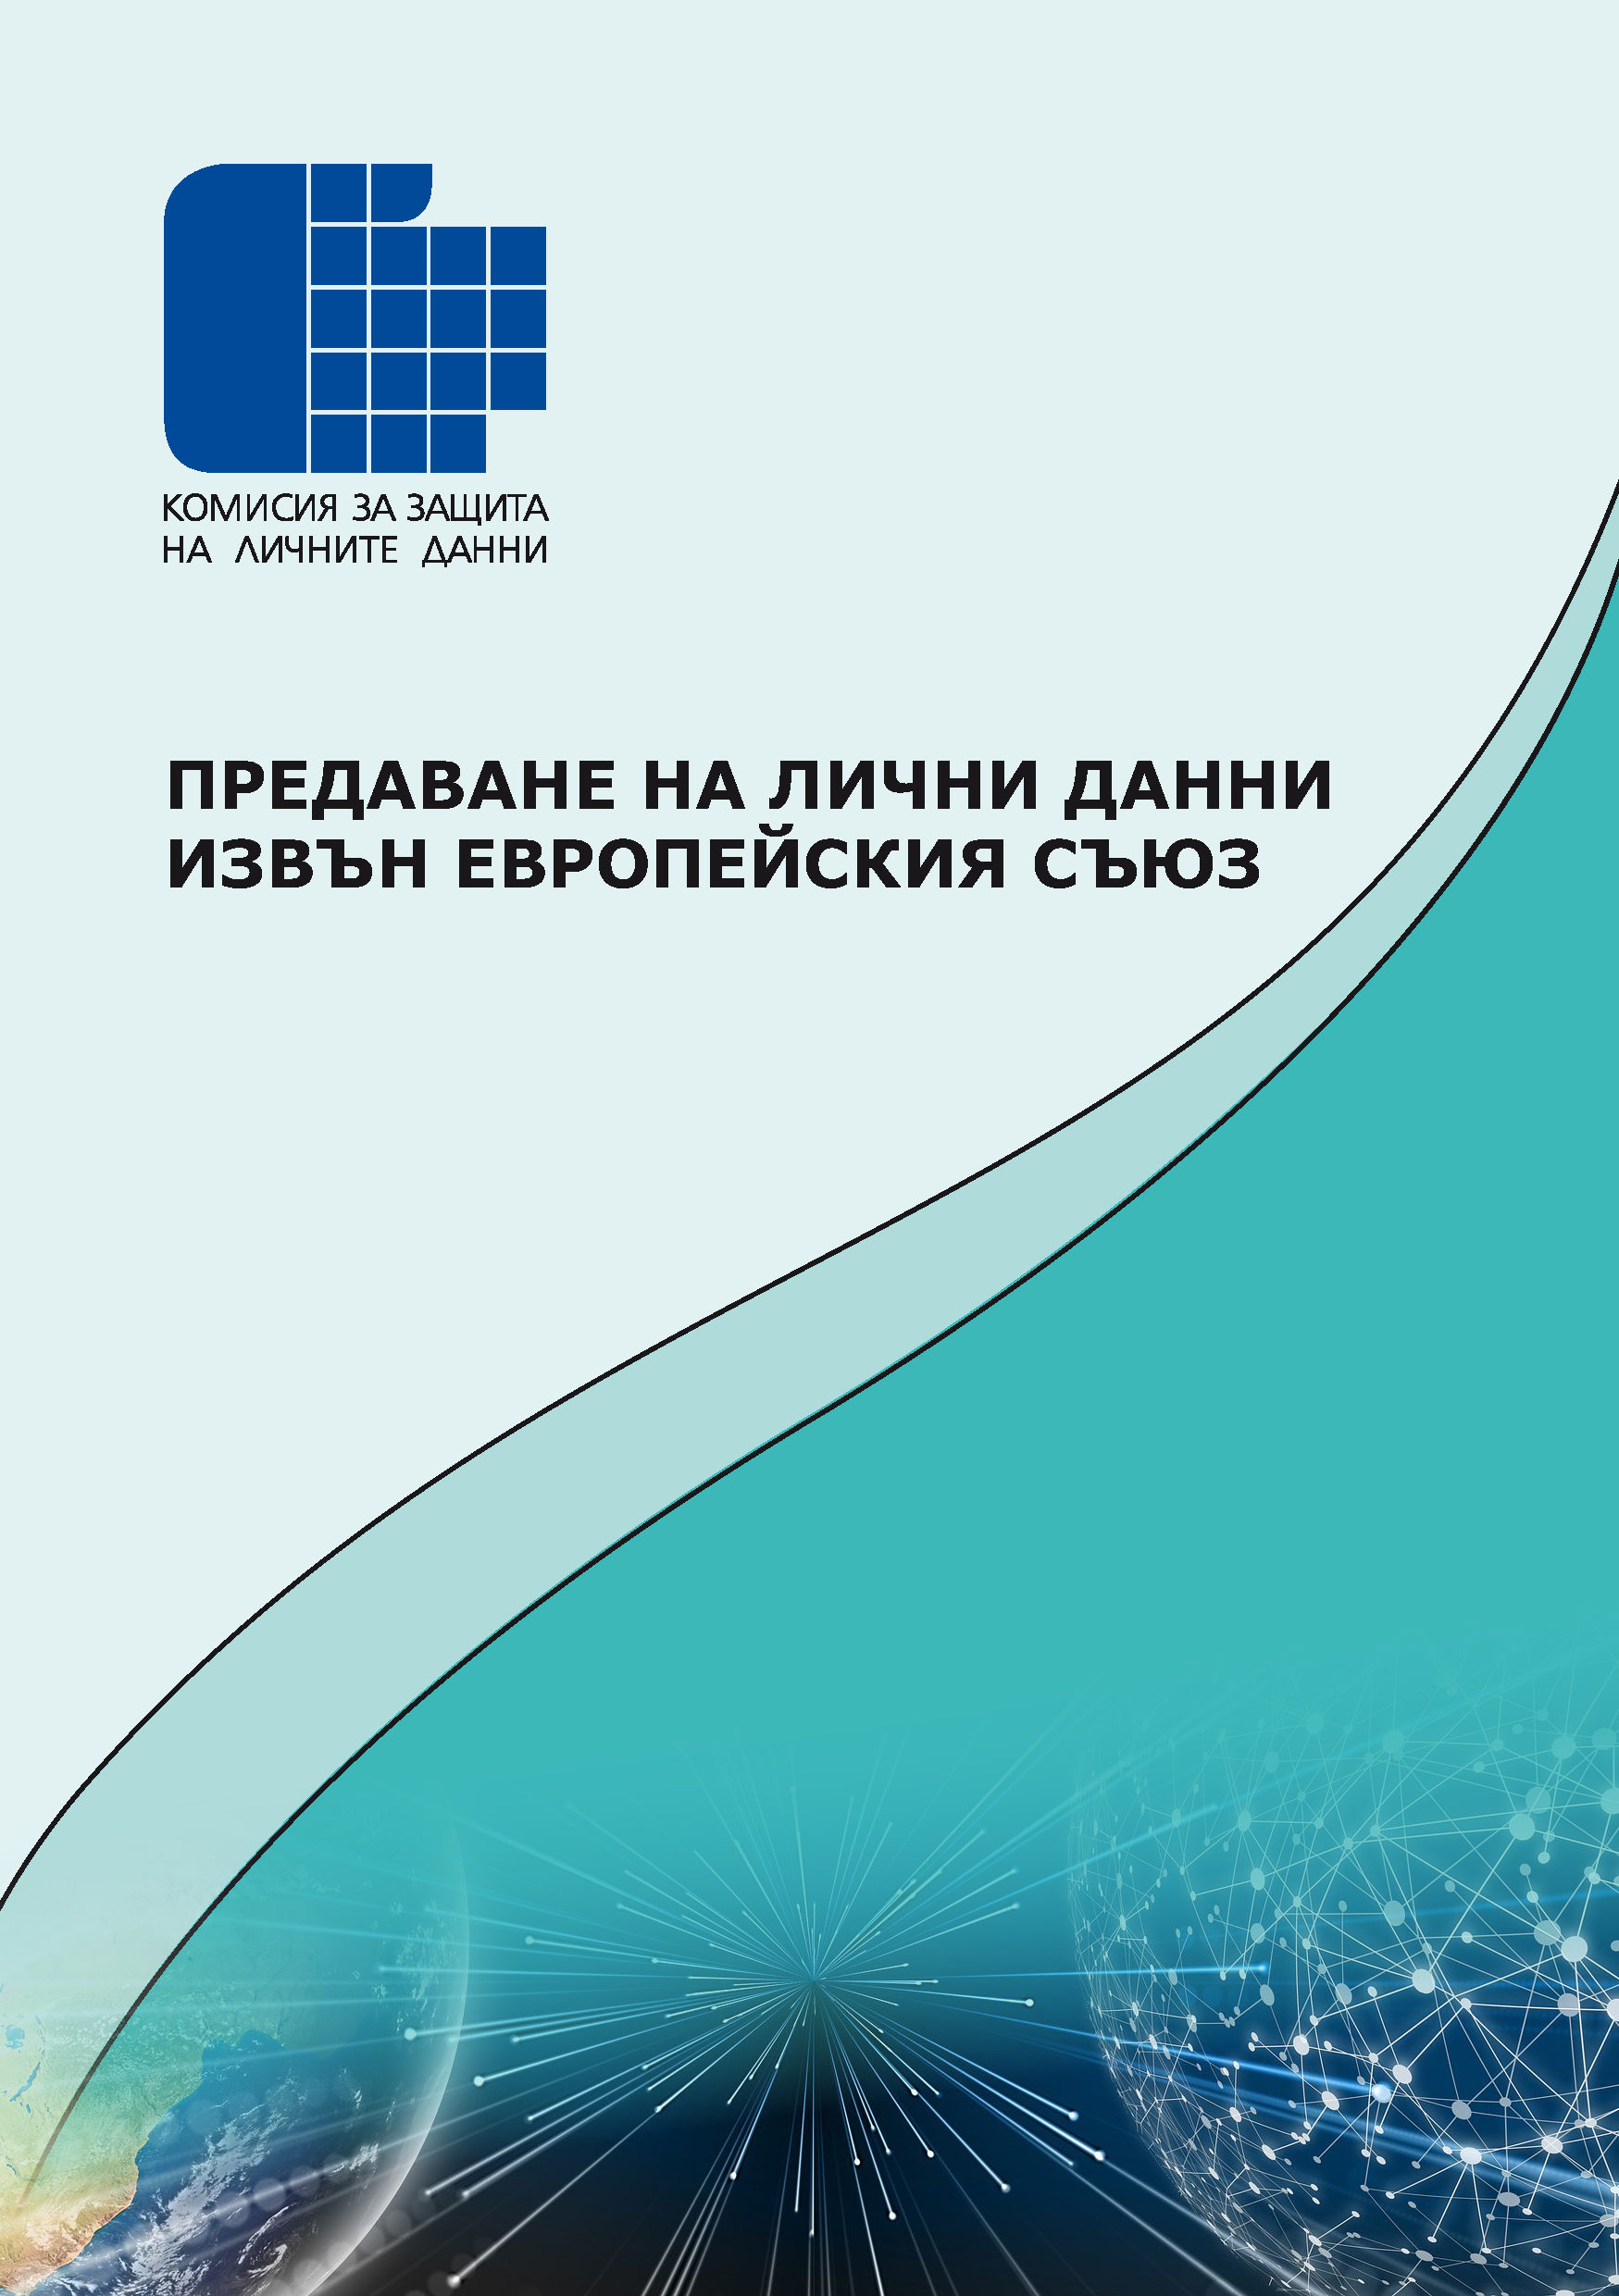 Информационна брошура на КЗЛД „Предаване на лични данни извън Европейския съюз”